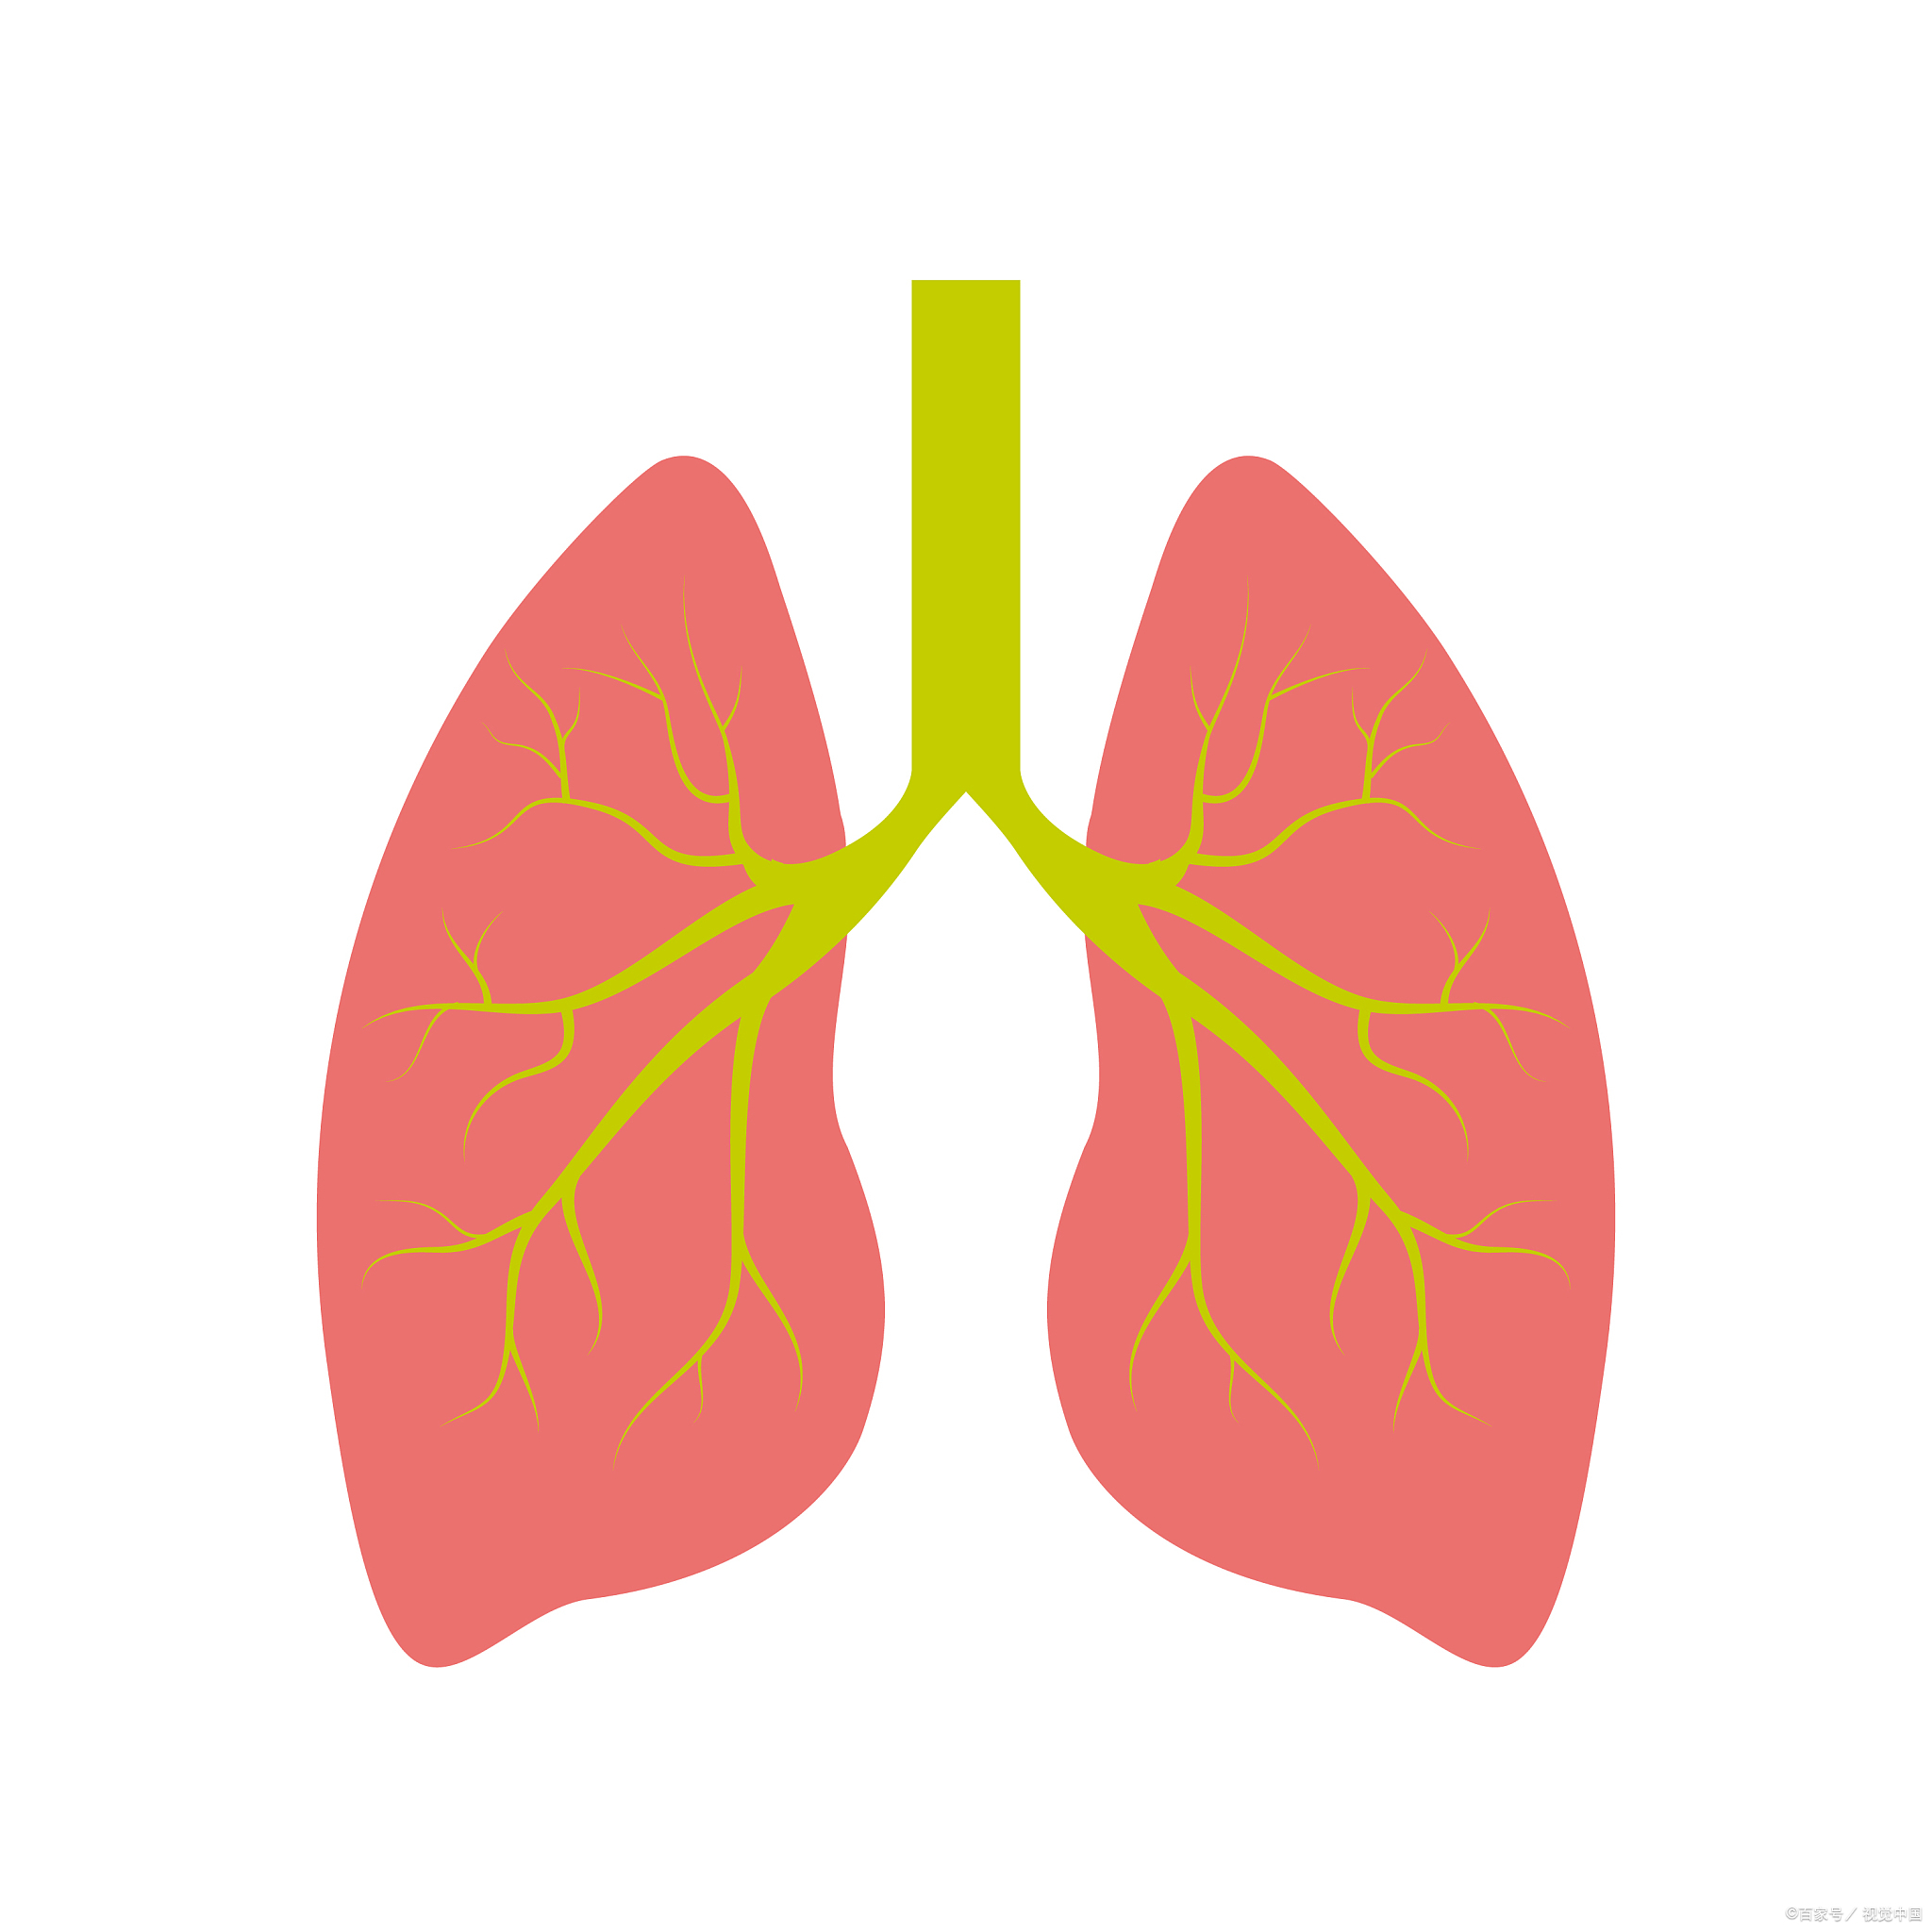 呼吸系统卡通图图片